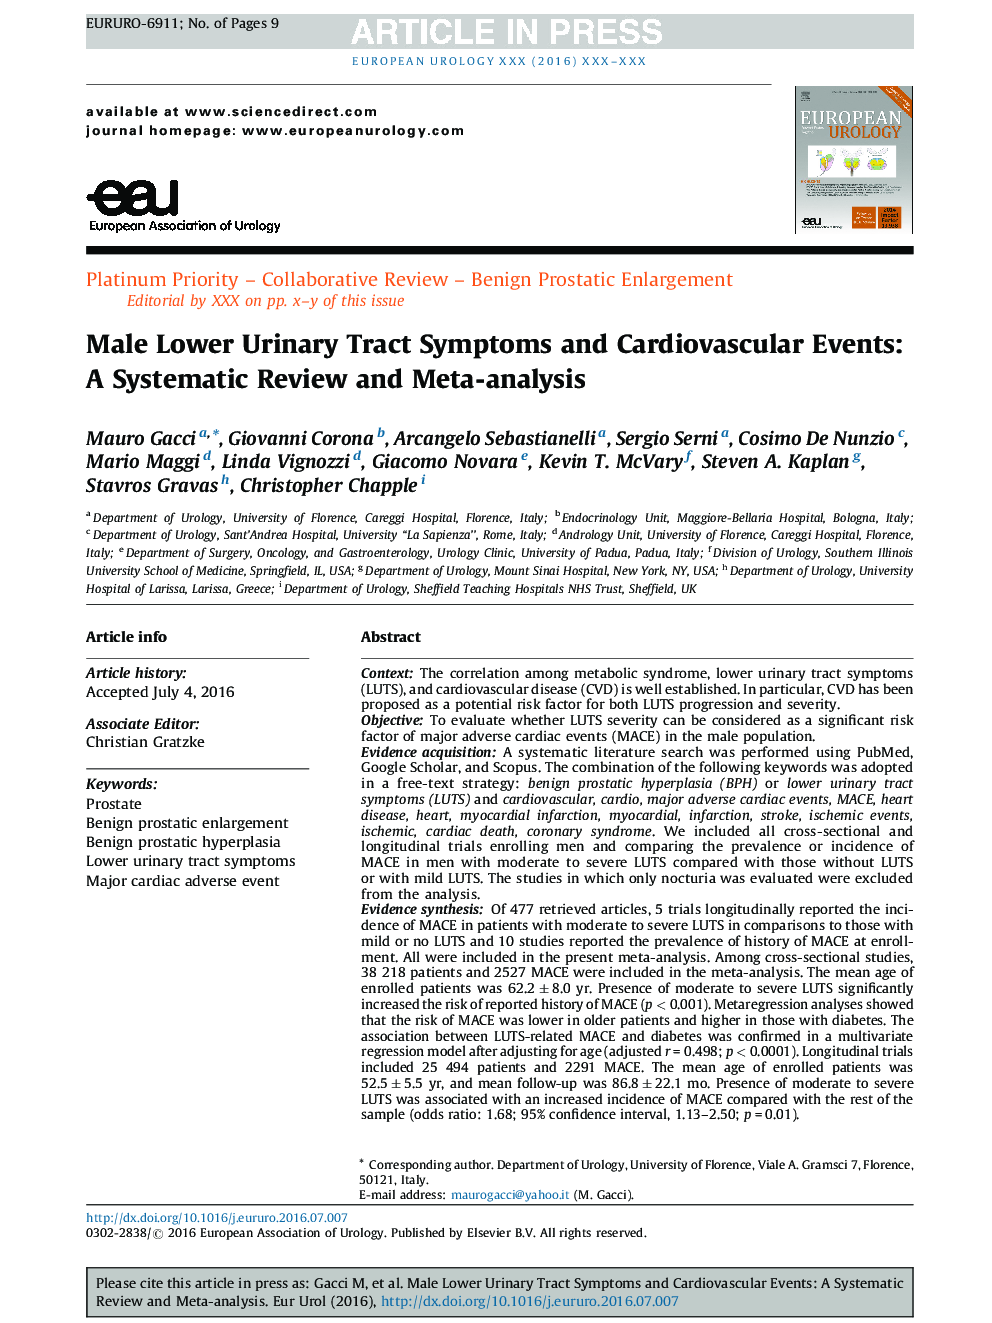 نشانه های دستگاه ادراری در مردان و رویدادهای قلب و عروق: یک بررسی منظم و متاآنالیز 